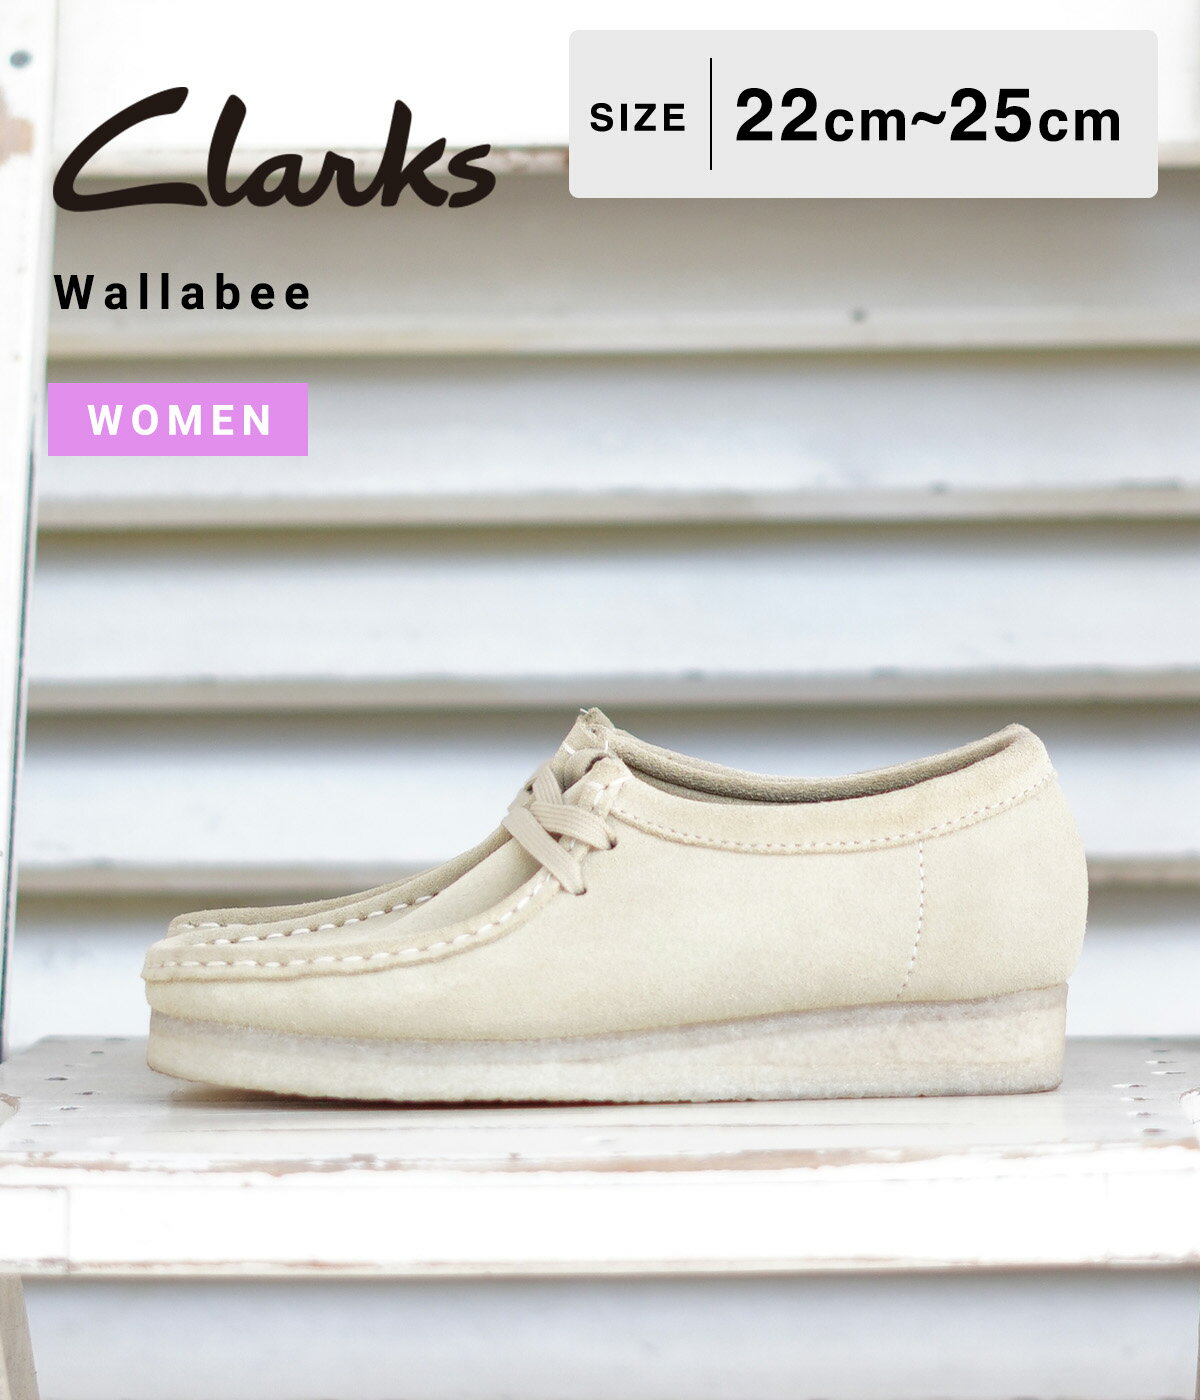 クラークス Clarks / クラークス : 【レディース】Wallabee : ワラビー スエード スウェード ローカット ブーツ ショートブーツ 革靴 レザーシューズ シューズ 靴 クレープソール 定番 UK規格 ベージュ メープルスウェード カジュアル 正規品 : 26155545【DEA】